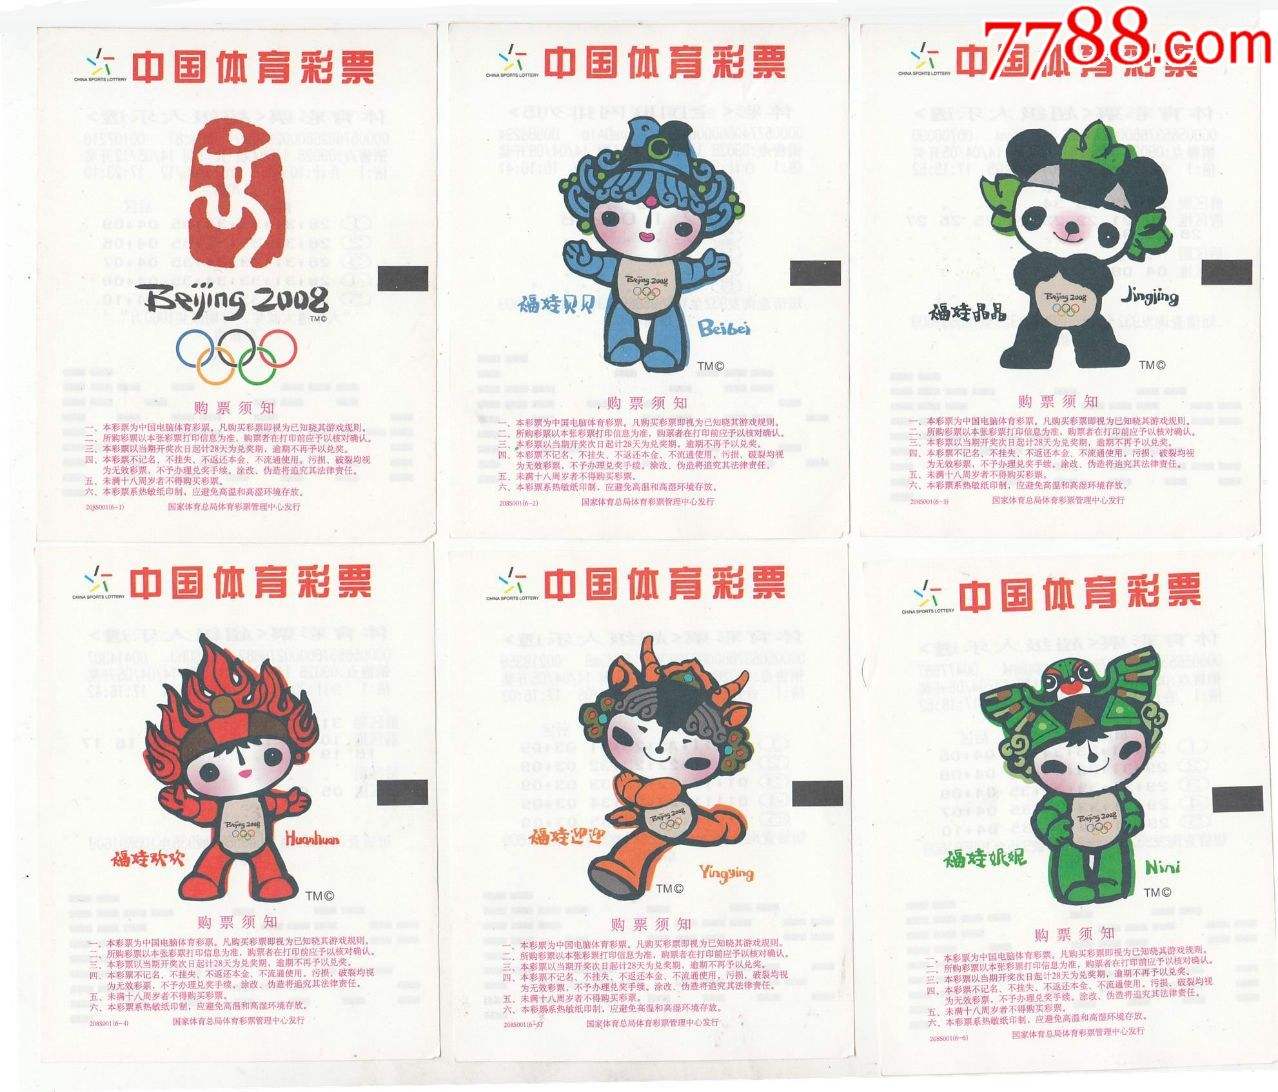 北京奥运吉祥物，北京奥运吉祥物福娃的原型！